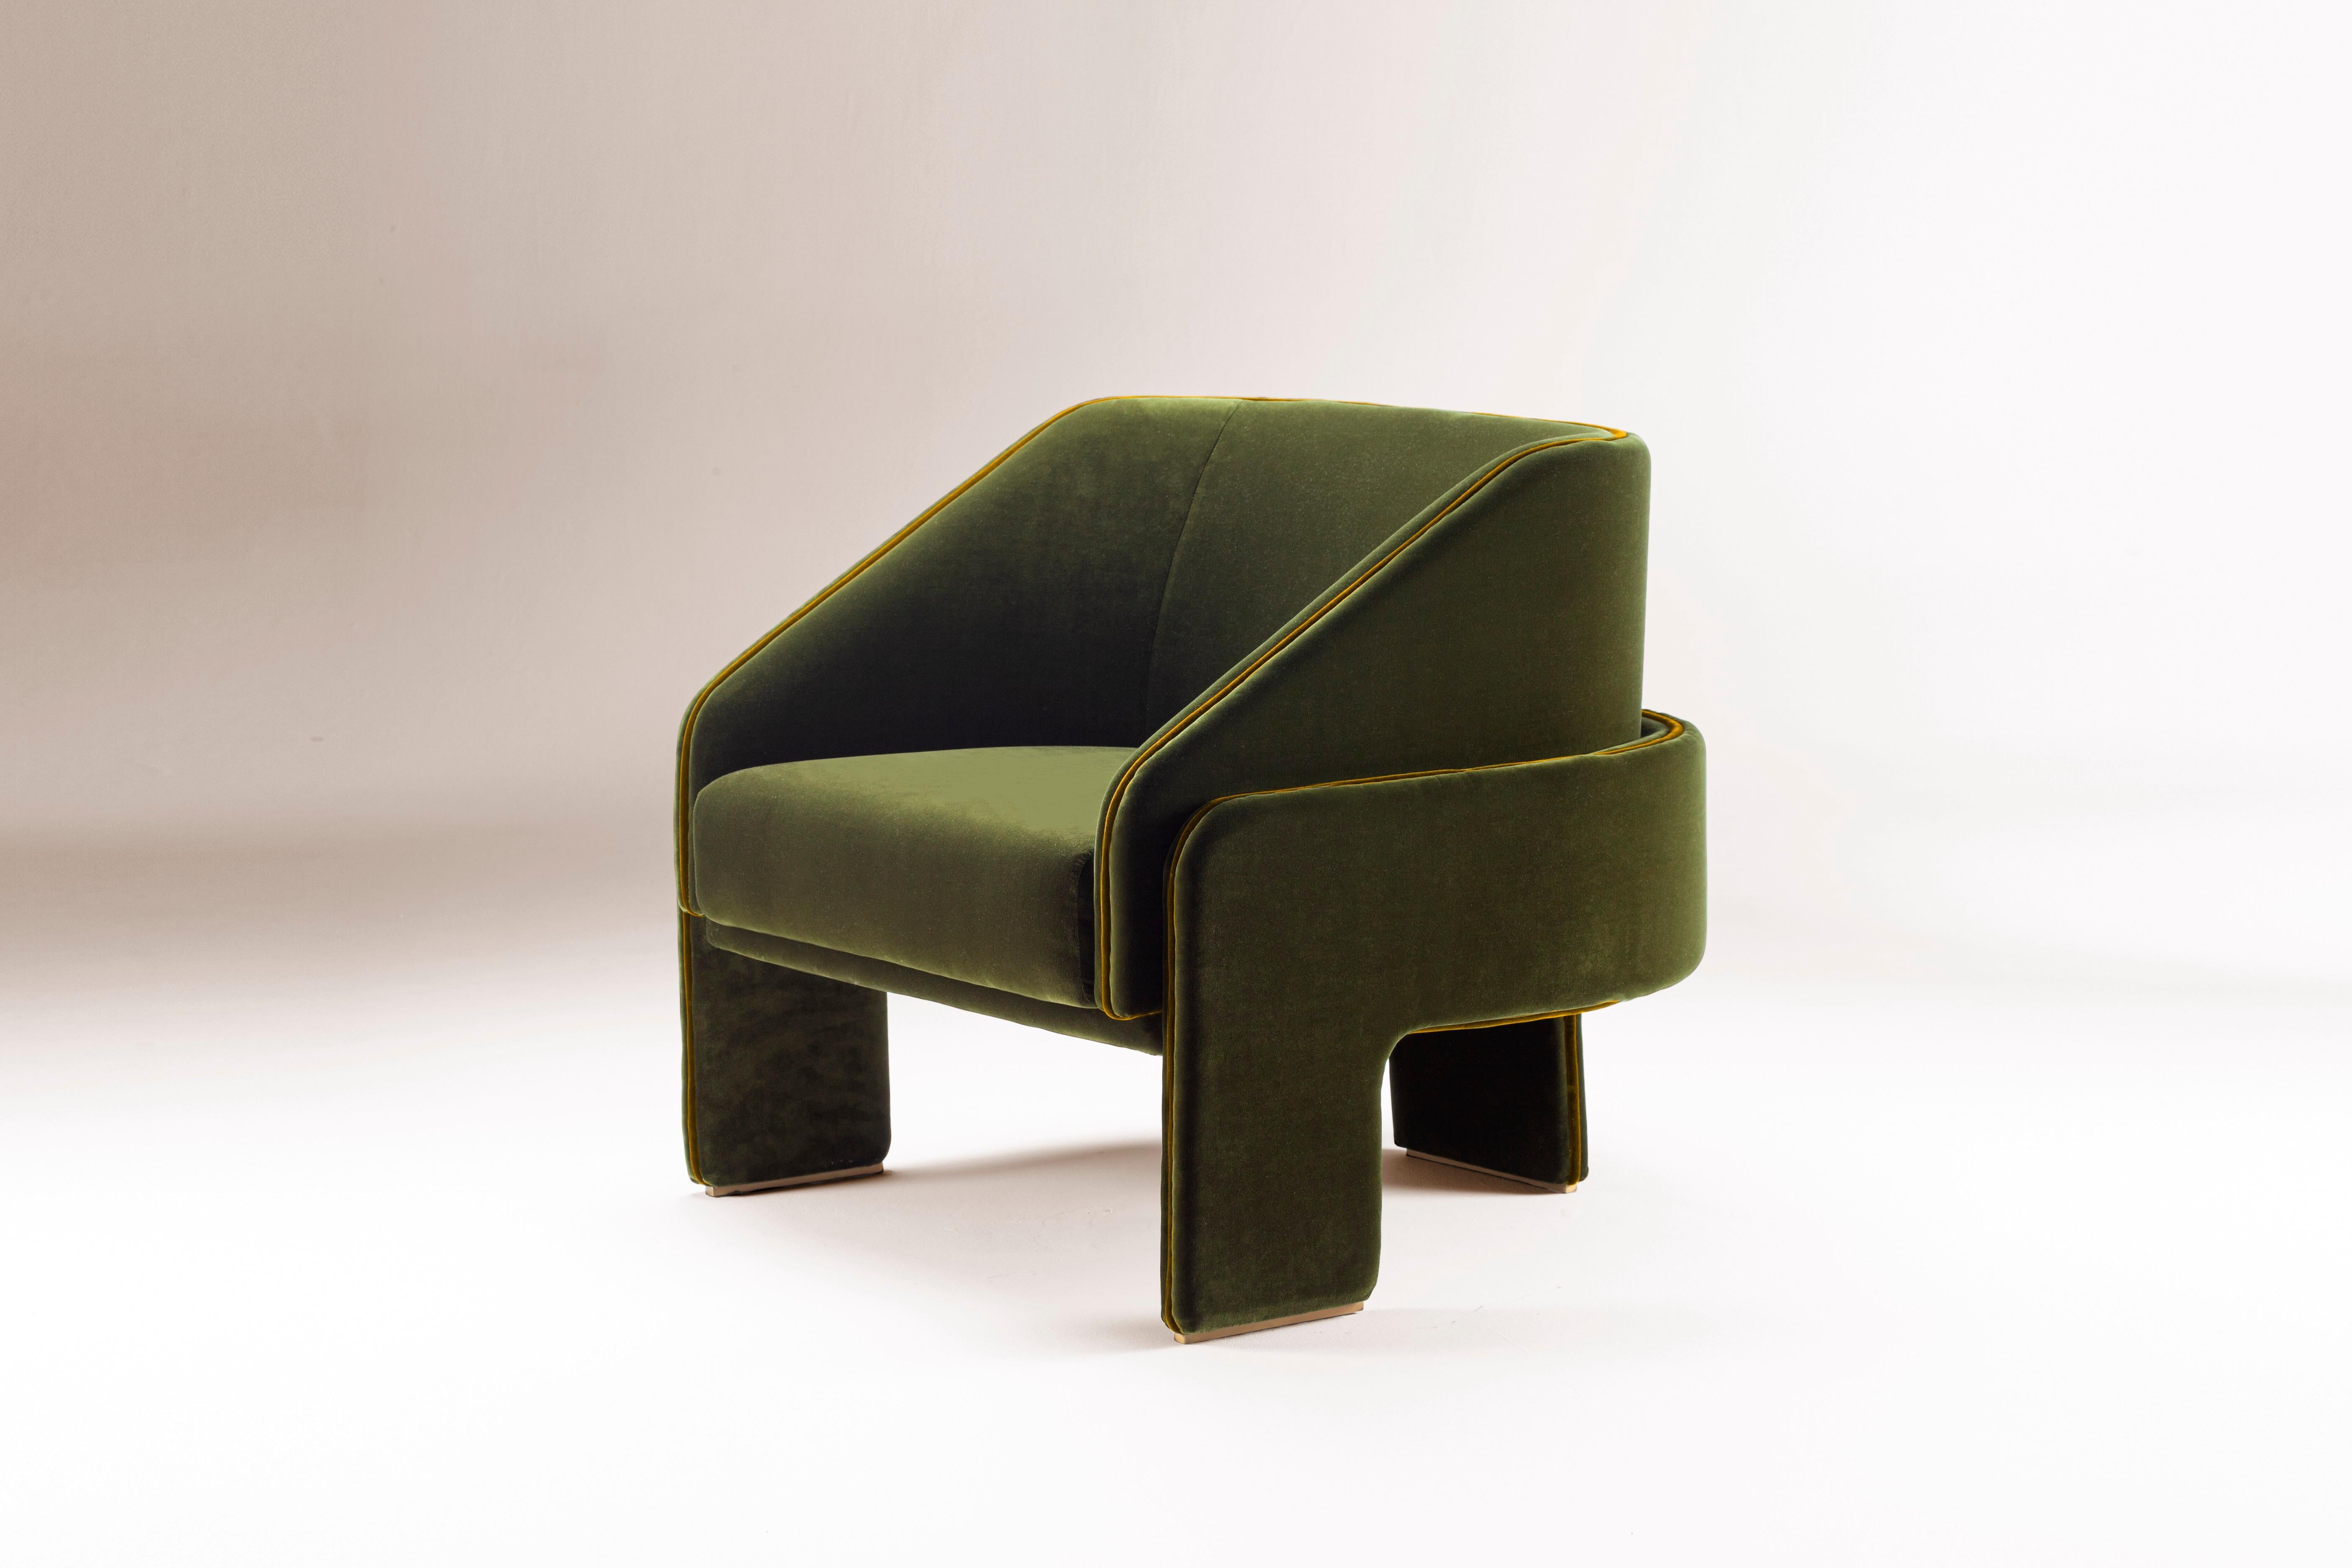 Der Sessel L'Unité ist proportional und skulptural, perfekt auf den menschlichen Maßstab abgestimmt. Es versammelt starke, gepolsterte Formen, die leicht auf eleganten Ständern ruhen. Ein Werk, das das Auge und die Fantasie anregt, inspiriert vom